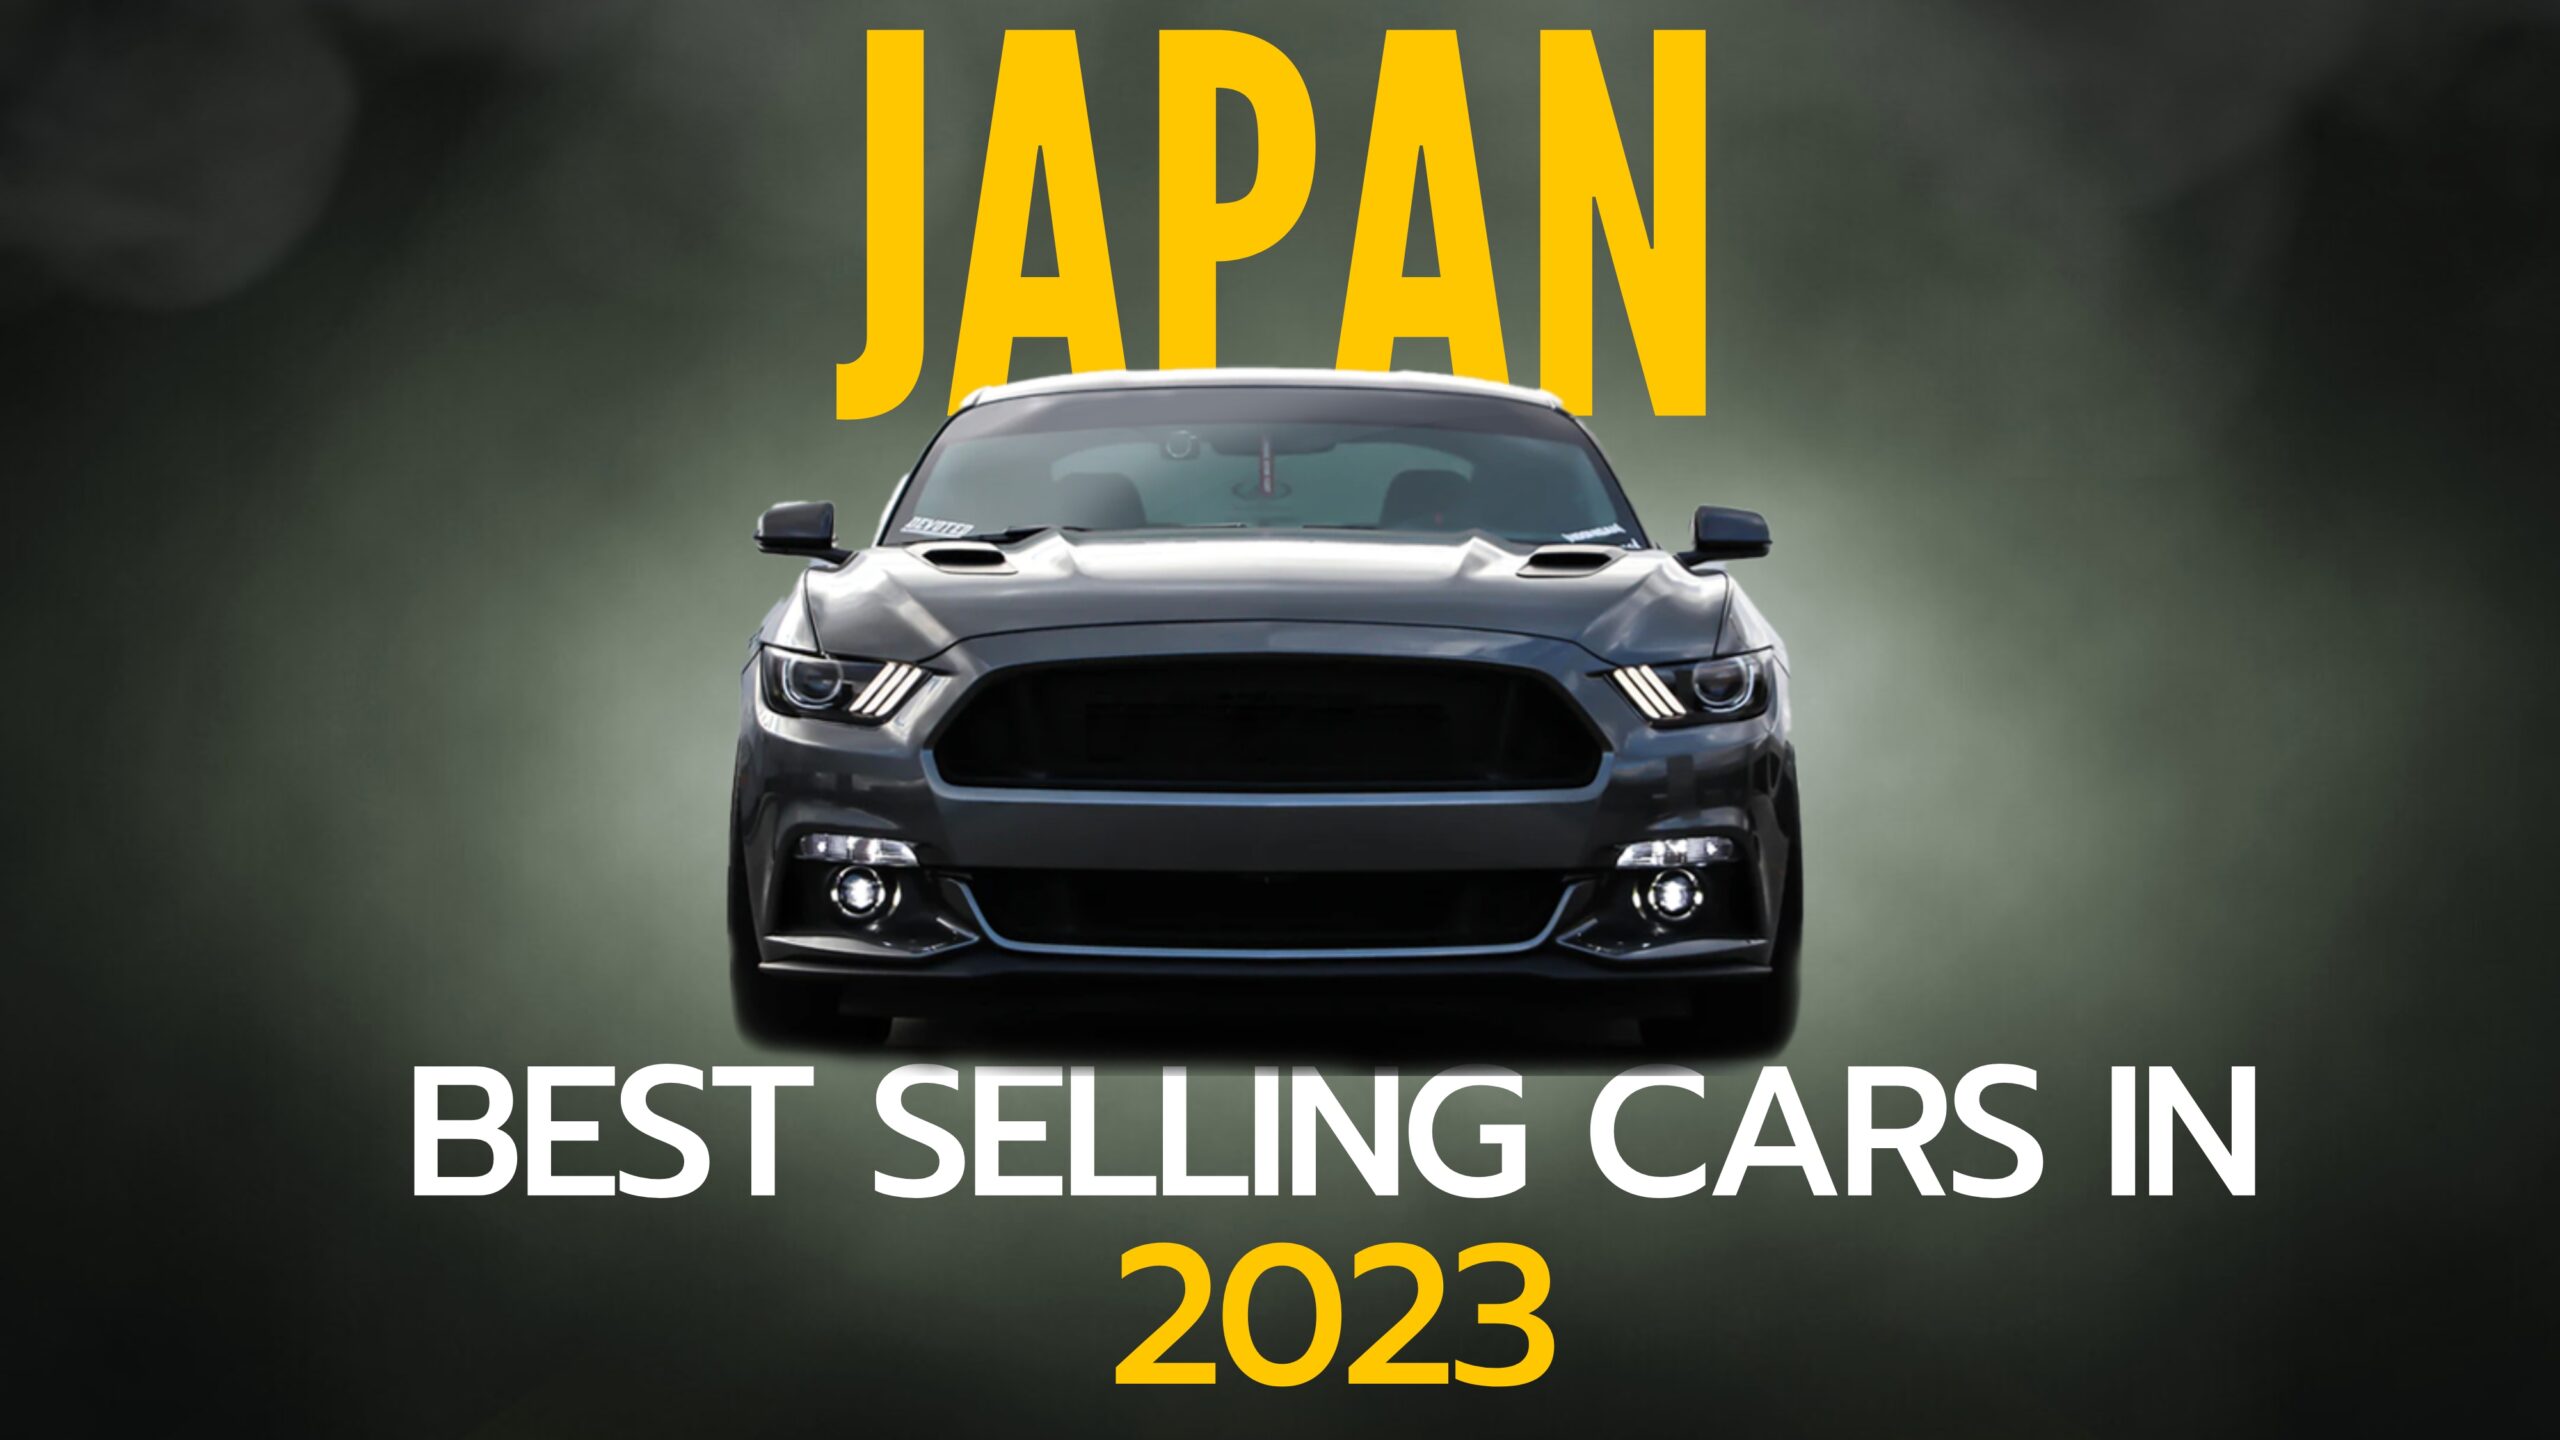 Voitures les plus vendues au Japon EN 2023